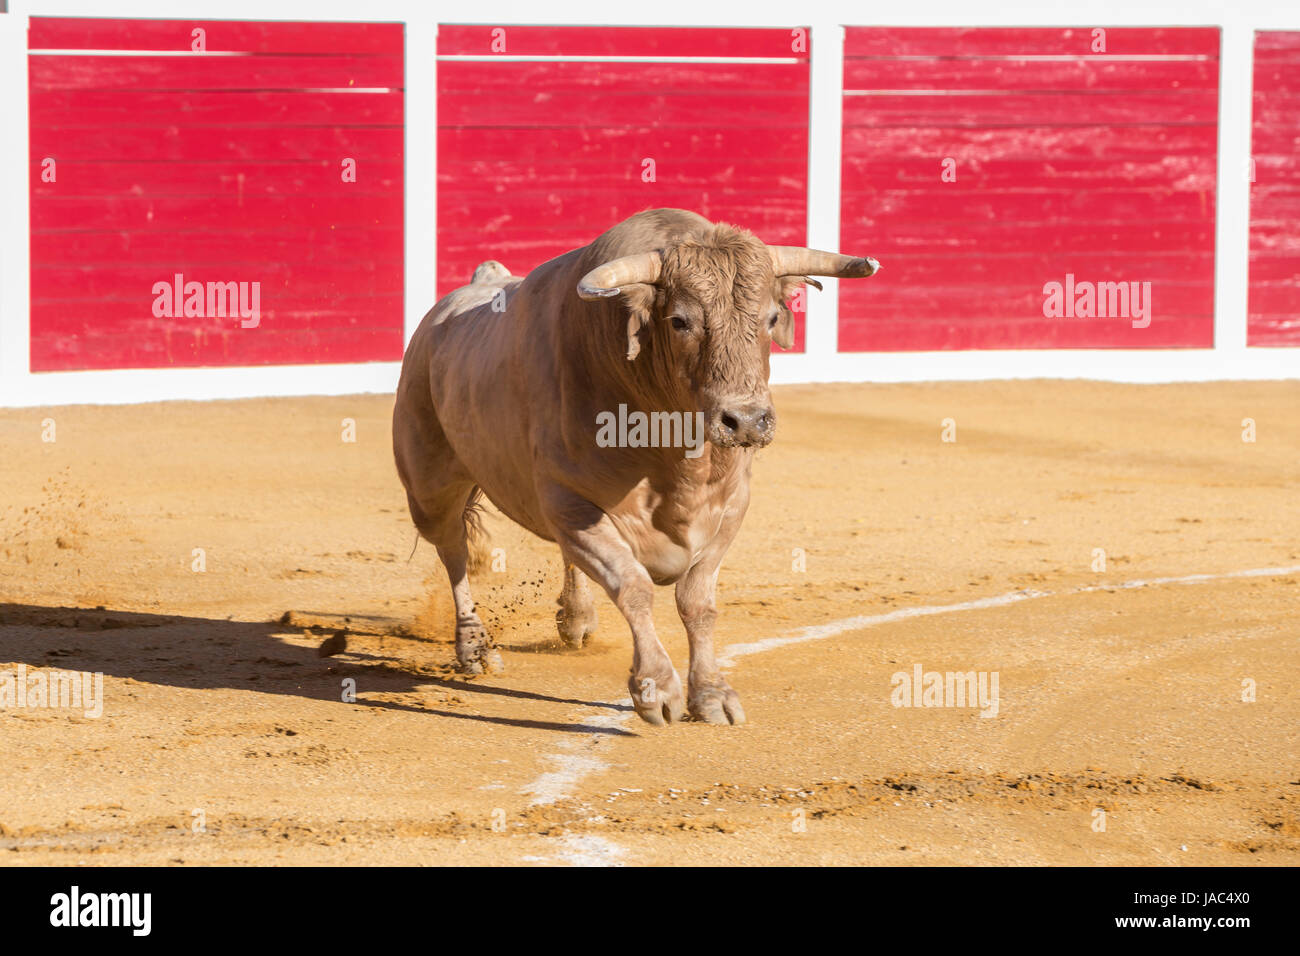 Sabiote, Spanien - 23. August 2014: Erfassung der Figur von einer mutigen Bull in einen Stierkampf Sabiote, Spanien Stockfoto